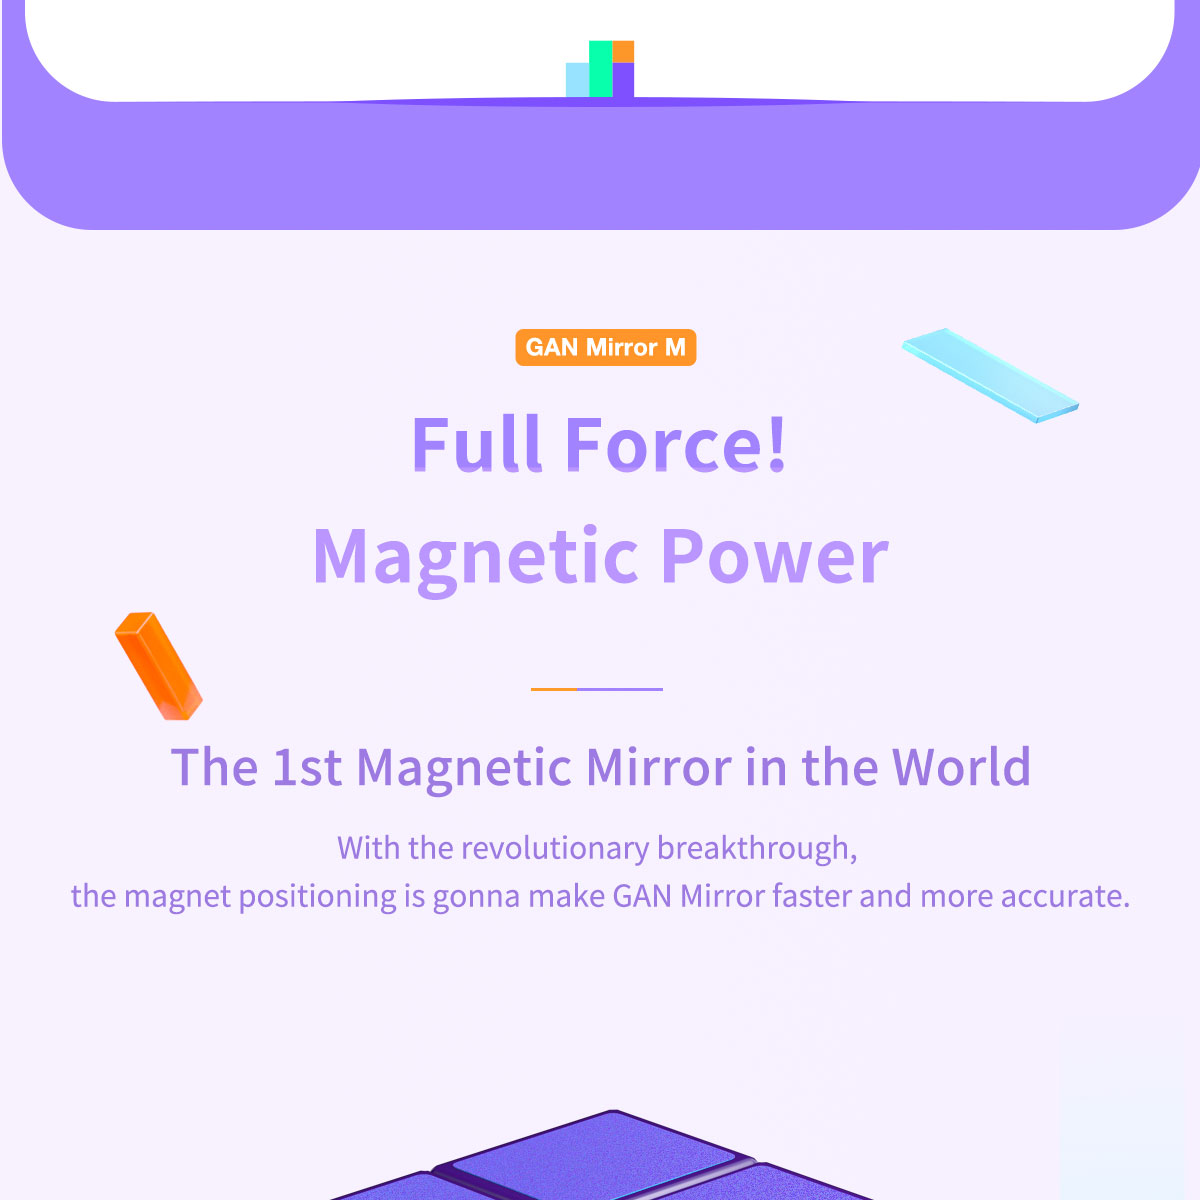 gan-mirror-m-speedcube-1